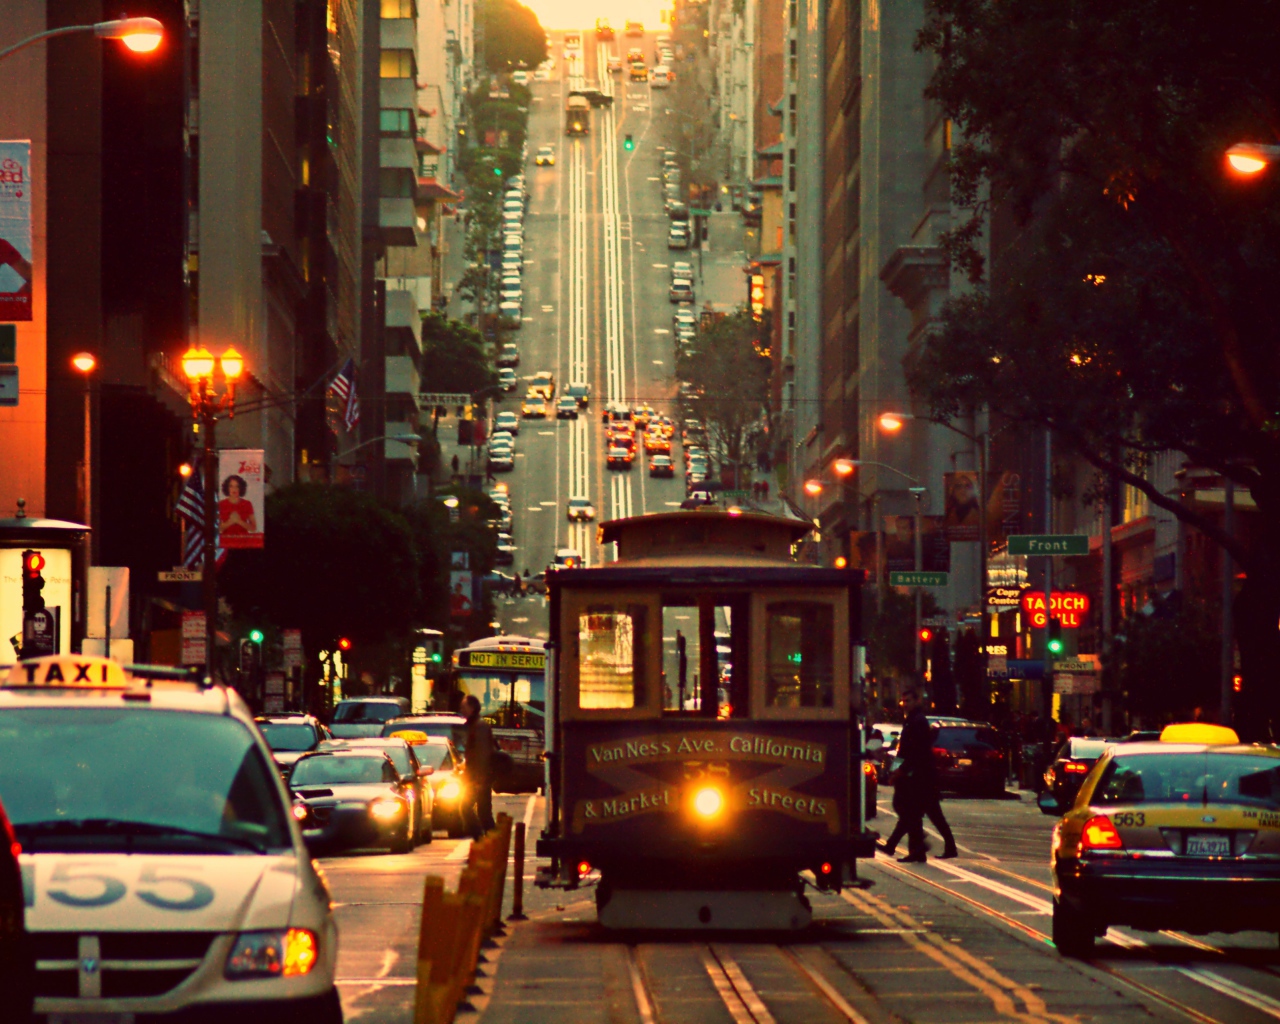 Tram on a street in San Francisco